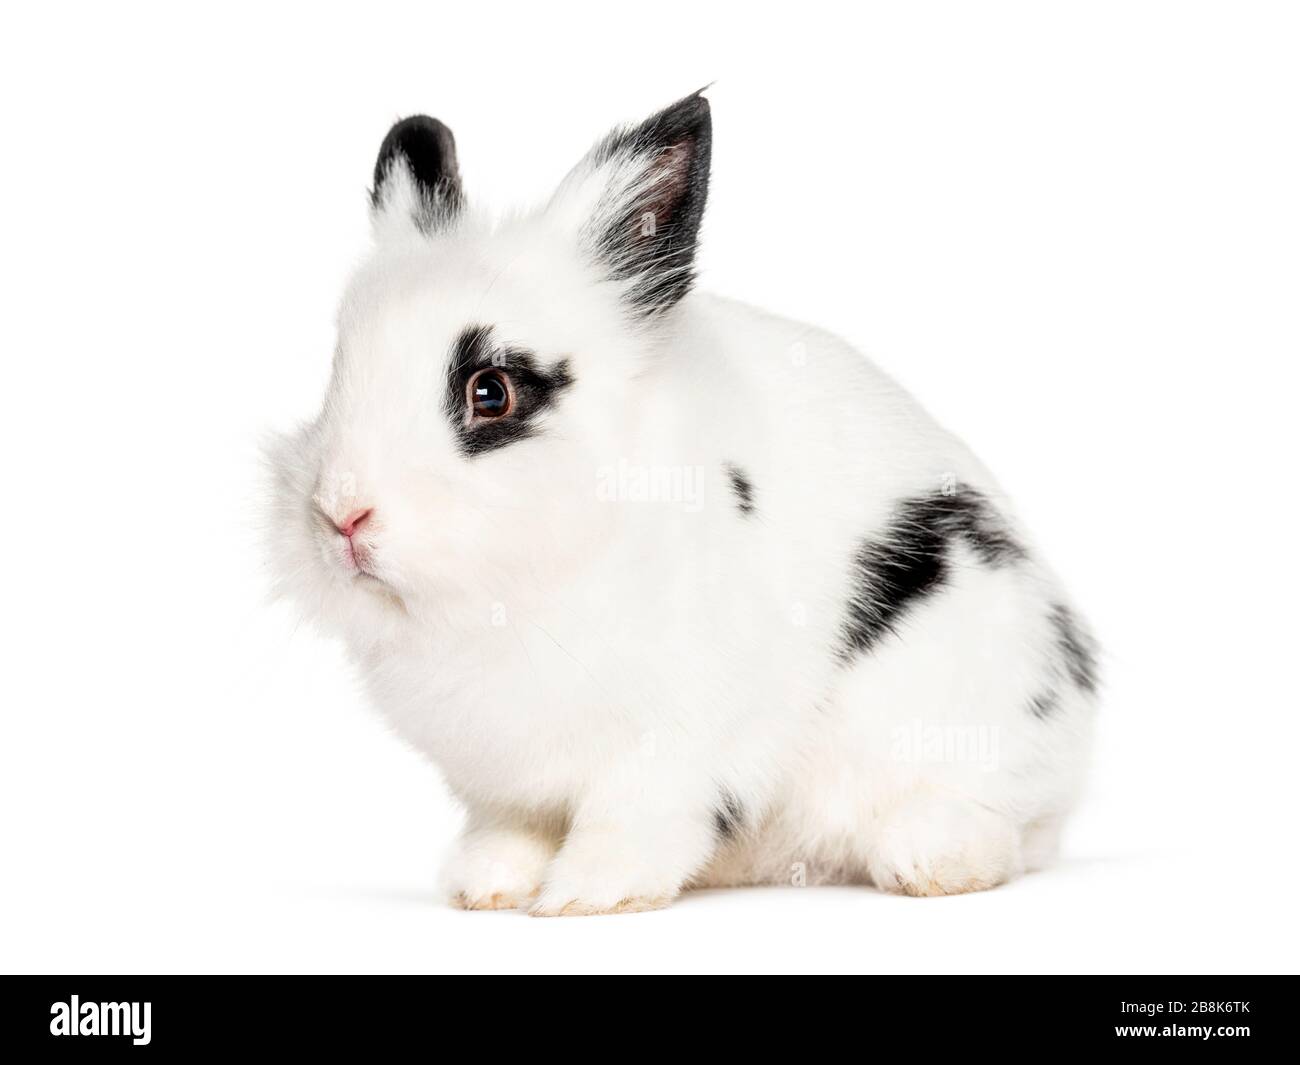 Giovane coniglio bianco e nero, isolato su bianco Foto Stock